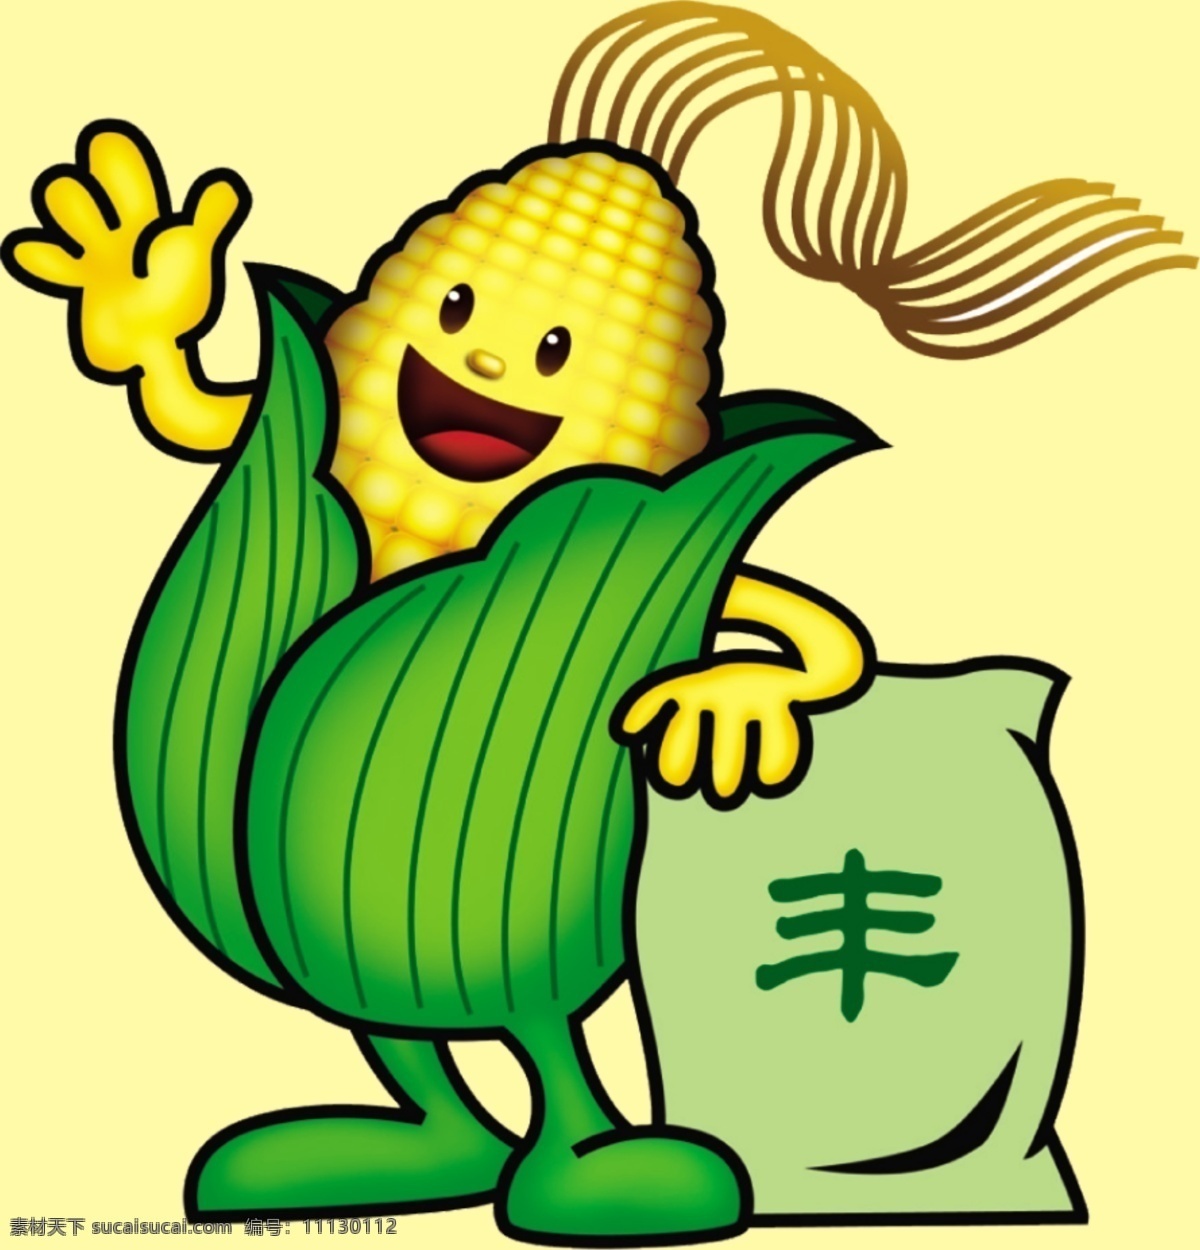 玉米卡通图 玉米 卡通 图案 丰收 种植 收货 动漫动画 动漫人物